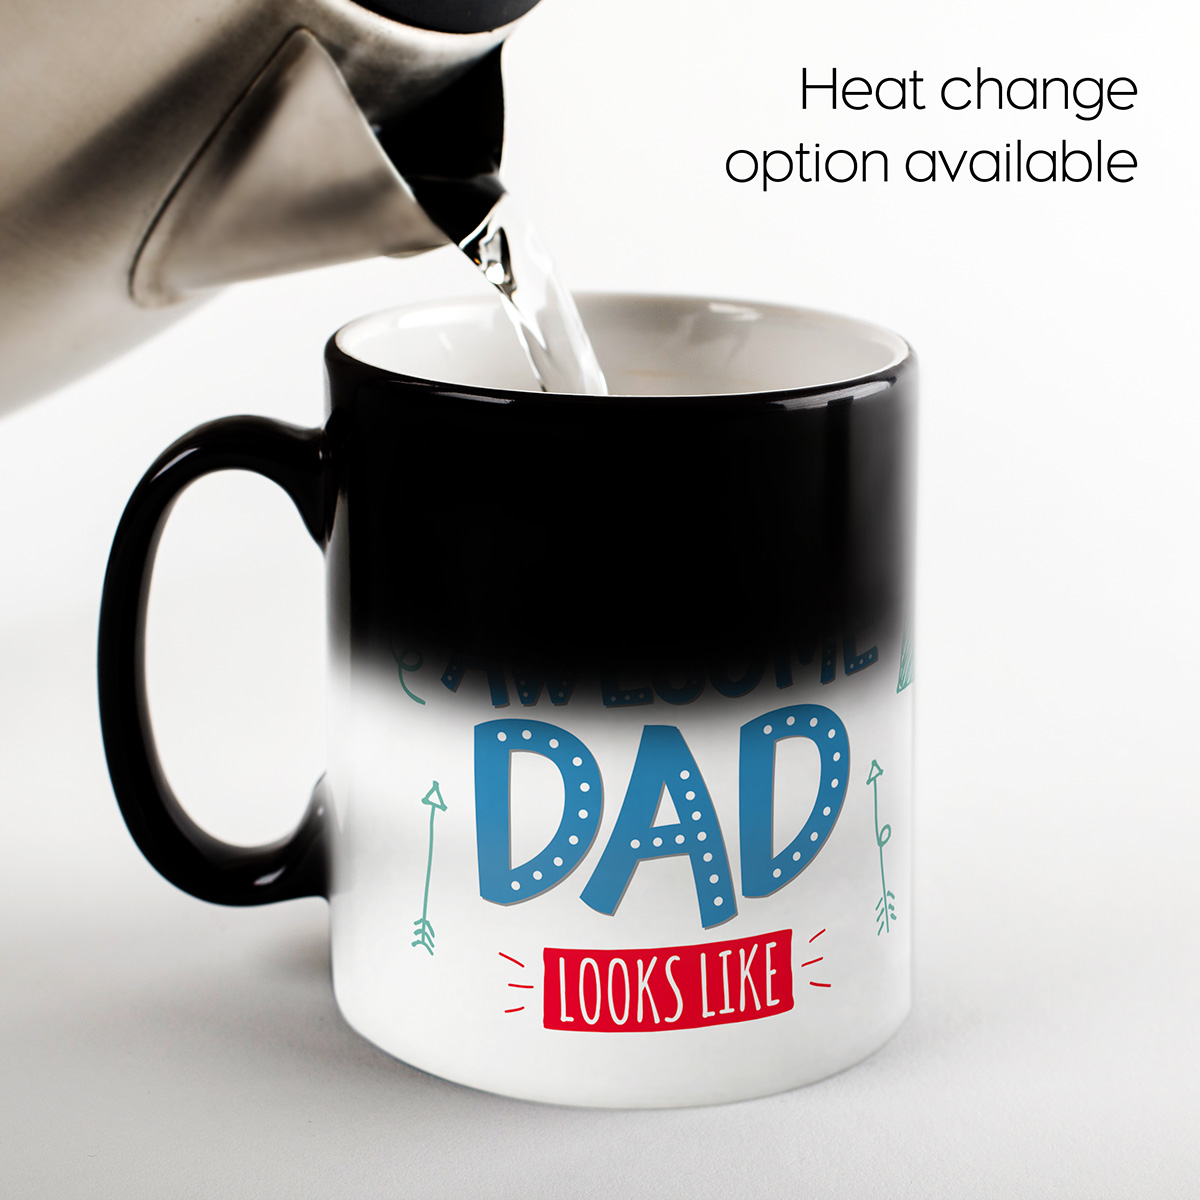 Personalised Mug - Awesome Dad